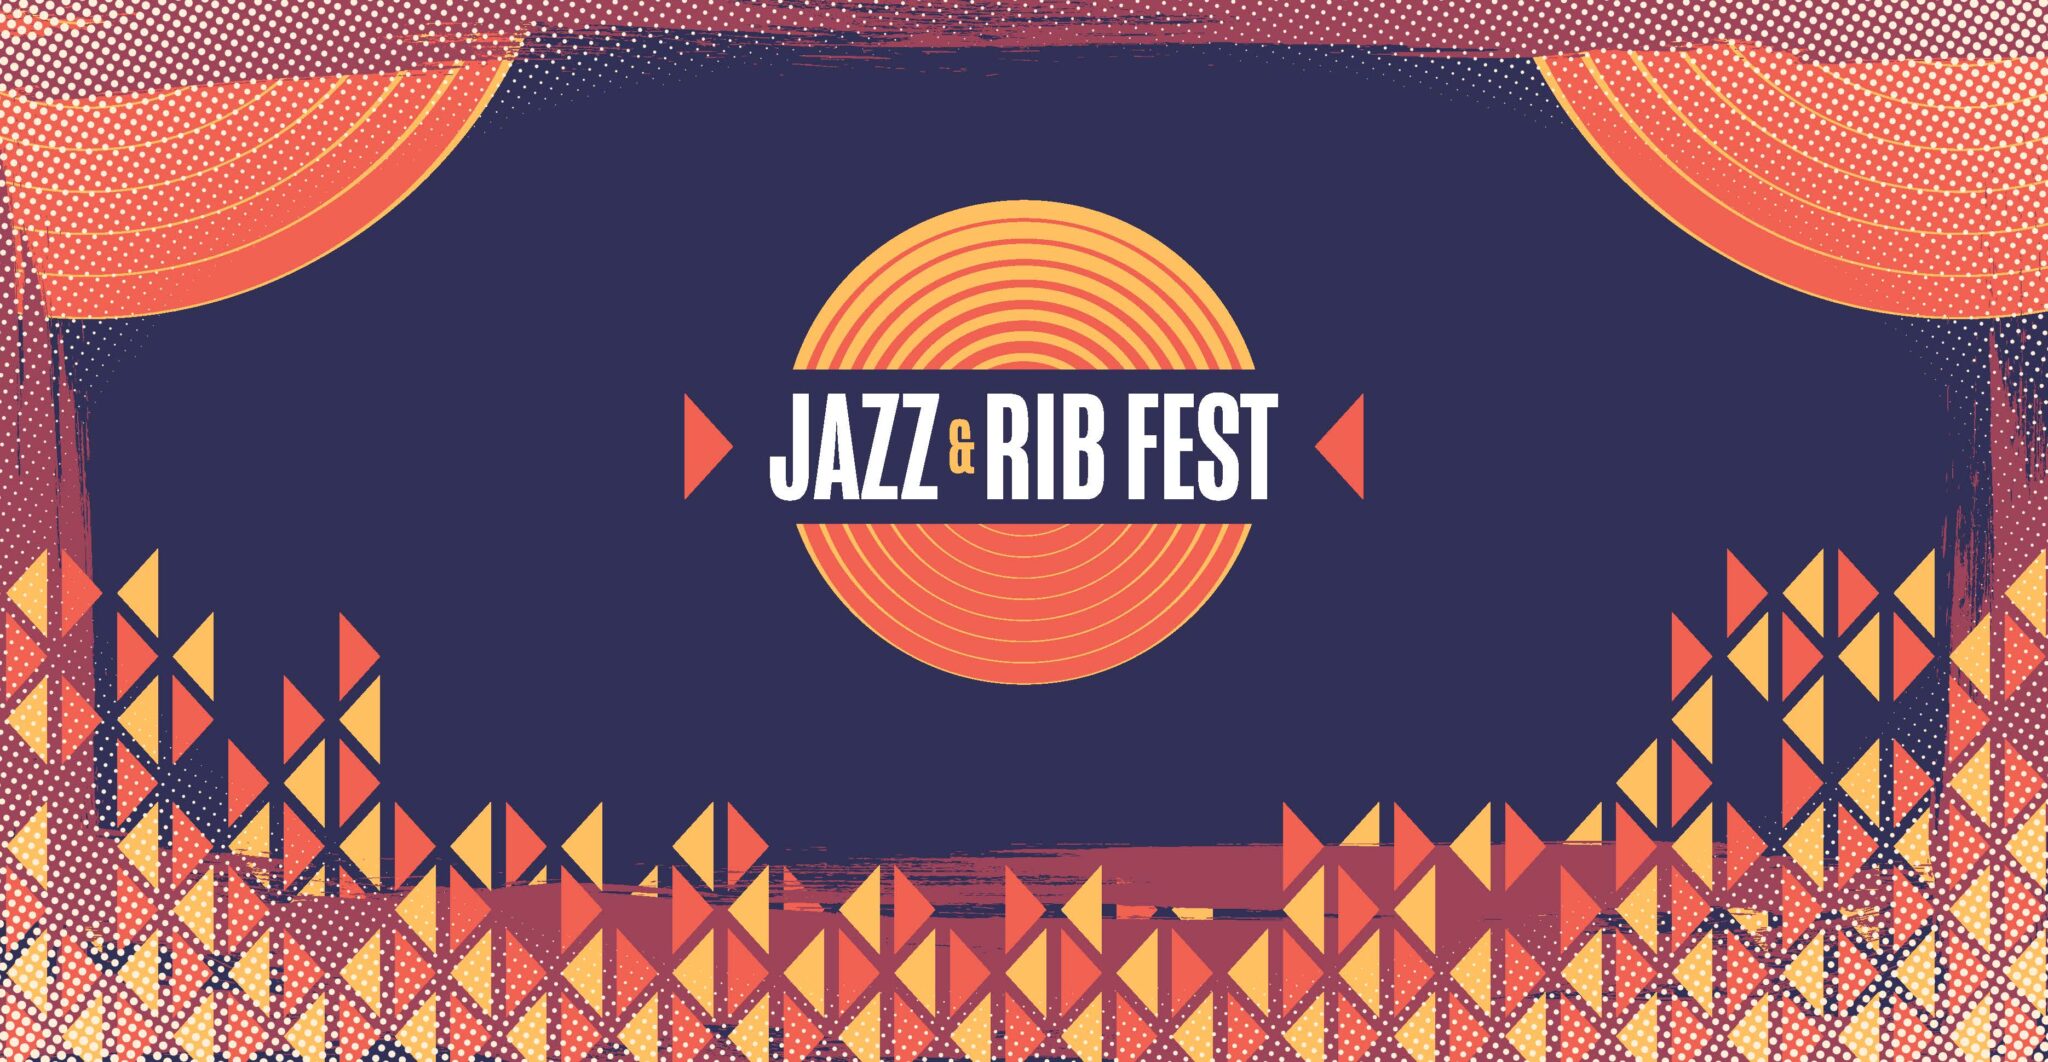 Jazz & Rib Fest July 2123, 2023 Columbus, Ohio